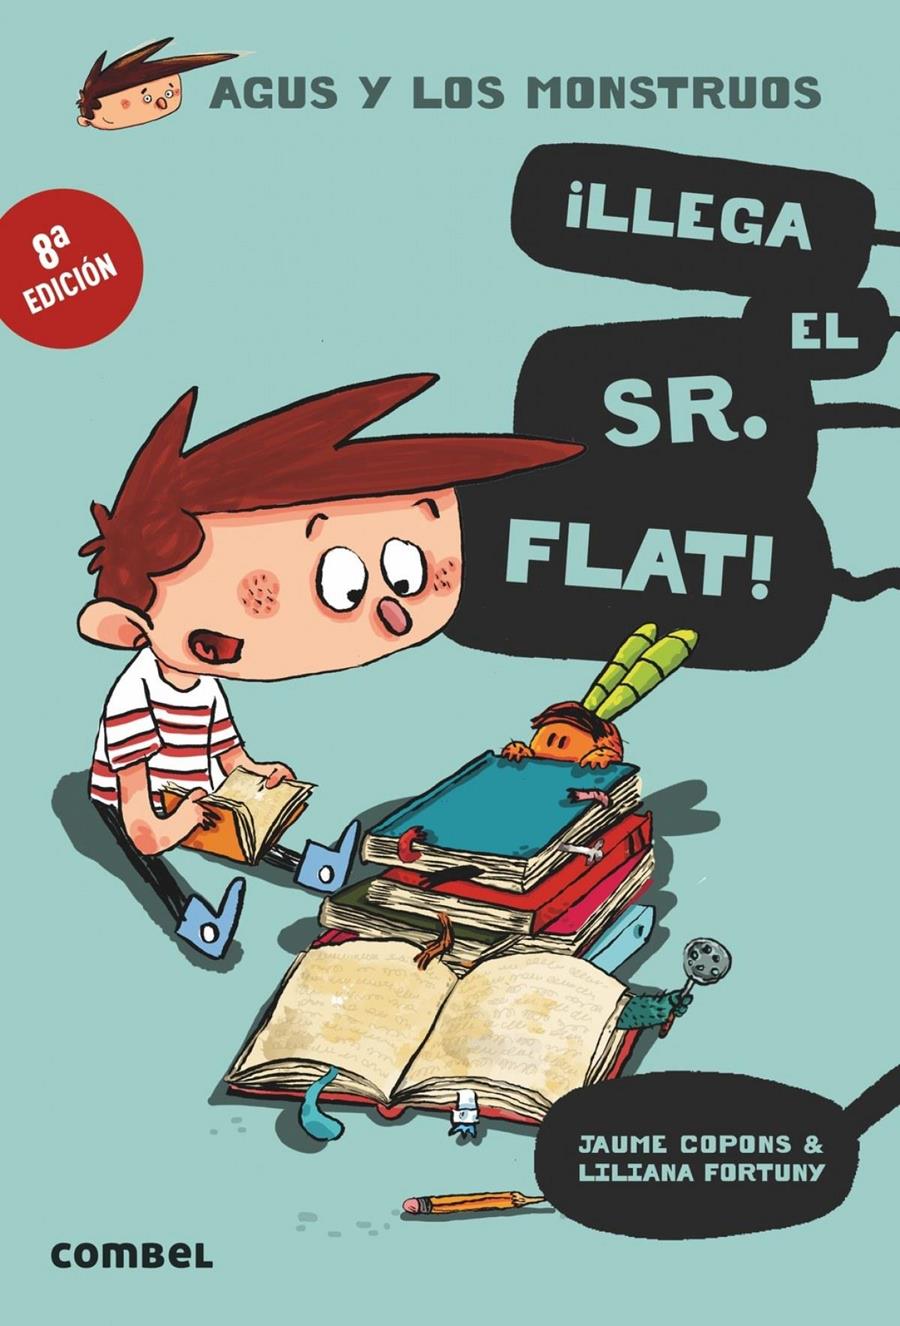 ¡Llega el Sr. Flat! | 9788498259117 | Jaume Copons | Álbumes ilustrados, libros informativos y objetos literarios.